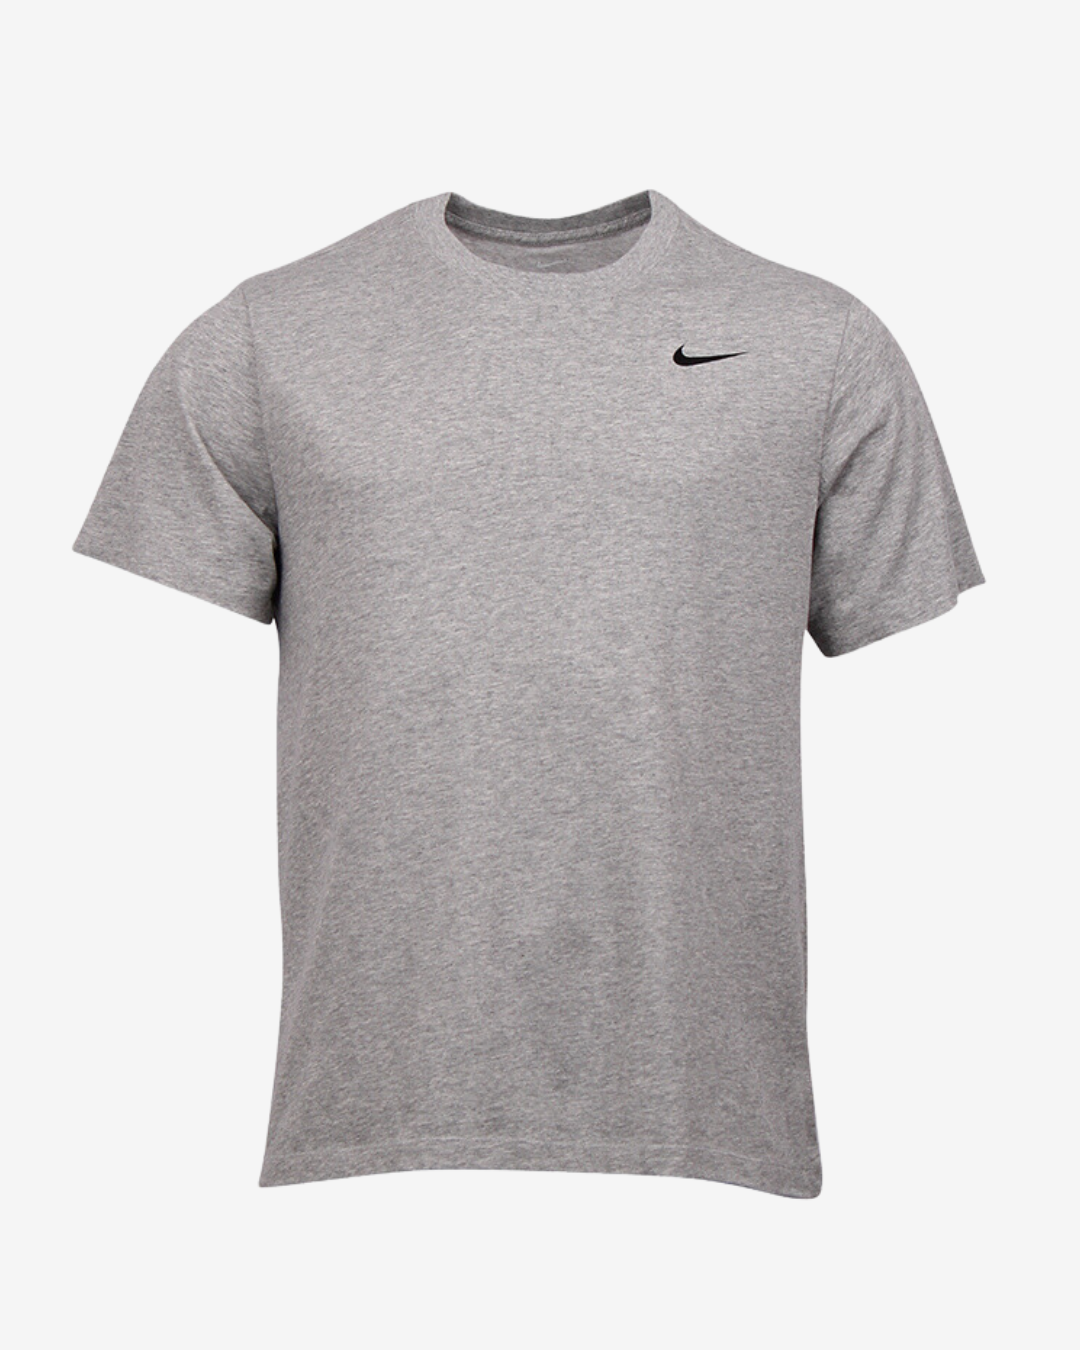 Nike Dri FIT solid t-shirt - Grå - Str. S - Modish.dk